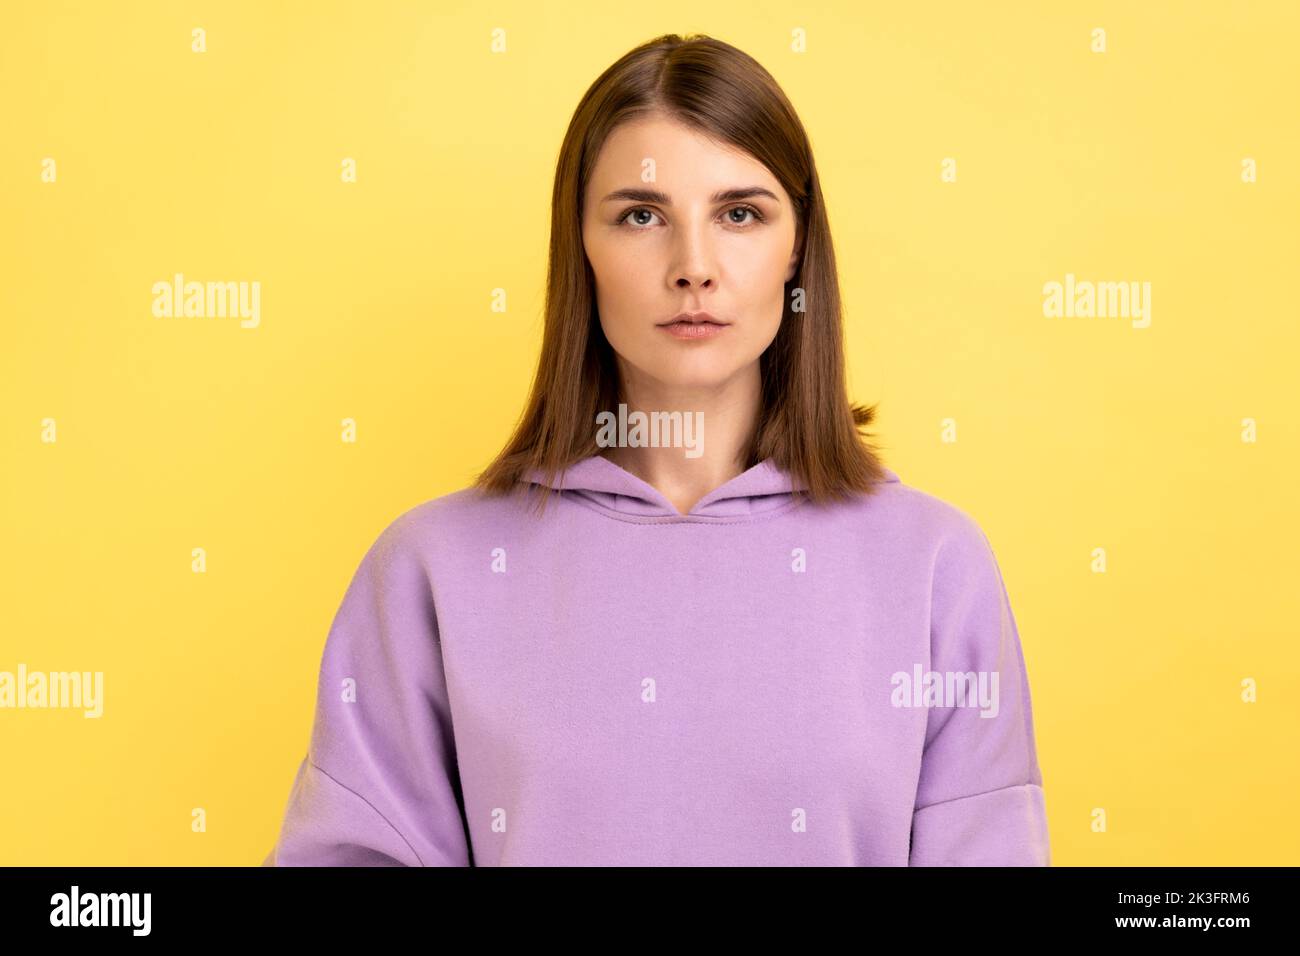 Porträt einer jungen, ernsten, unlächelnden, strengen Frau, die mit einem ruhigen, aufmerksamen Gesichtsausdruck auf die Kamera blickt und einen purpurnen Hoodie trägt. Innenaufnahme des Studios isoliert auf gelbem Hintergrund. Stockfoto